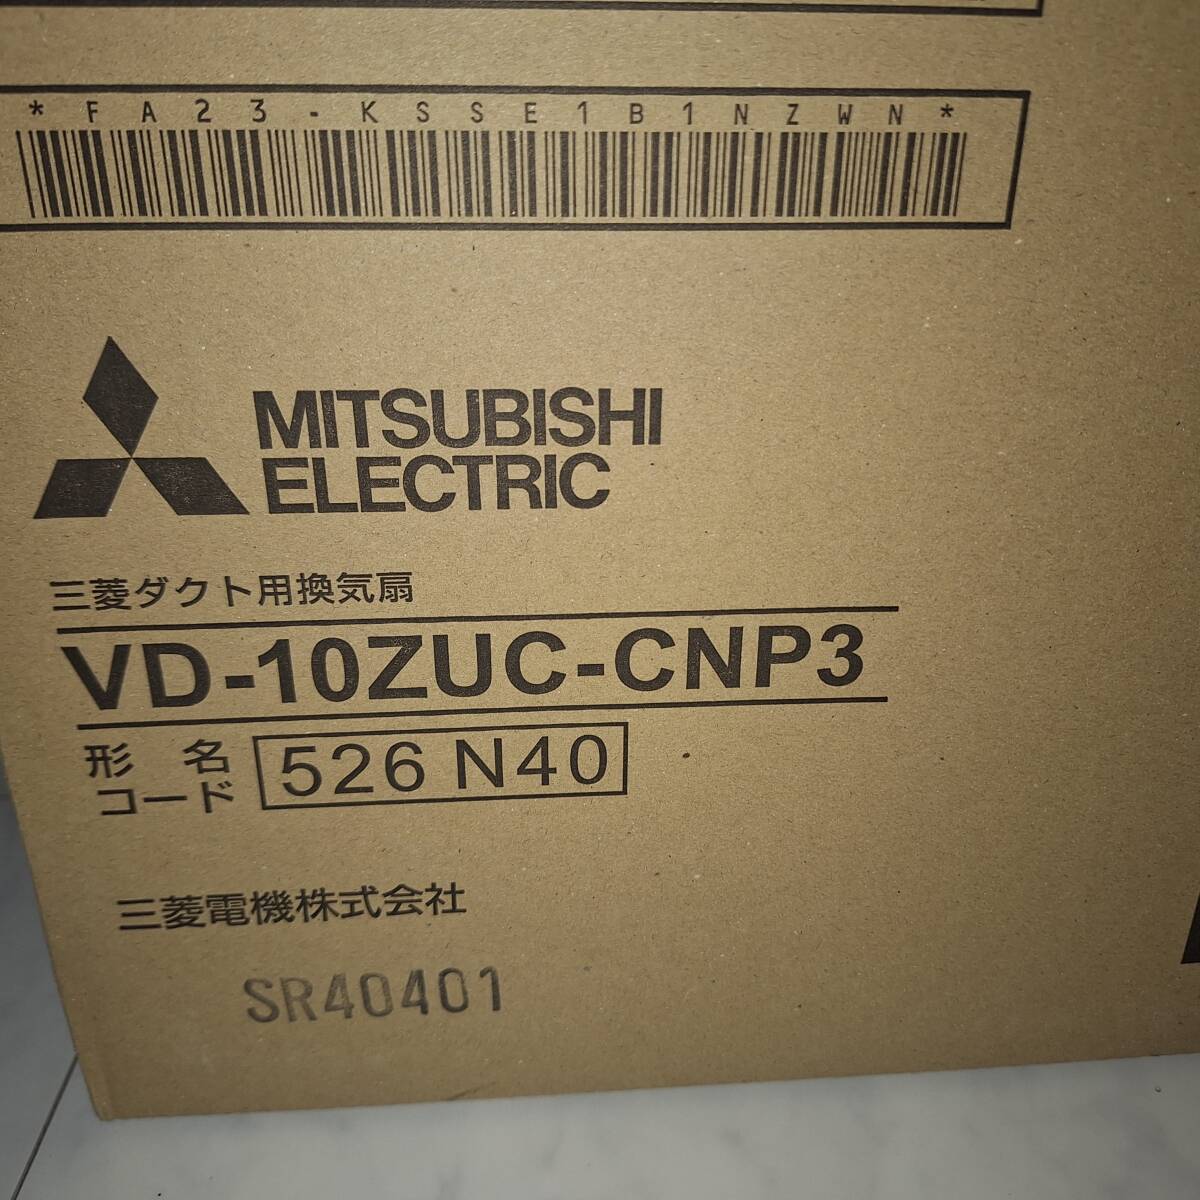  новый товар Mitsubishi производства ванная модуль с ванной вытяжной вентилятор потолок установка 